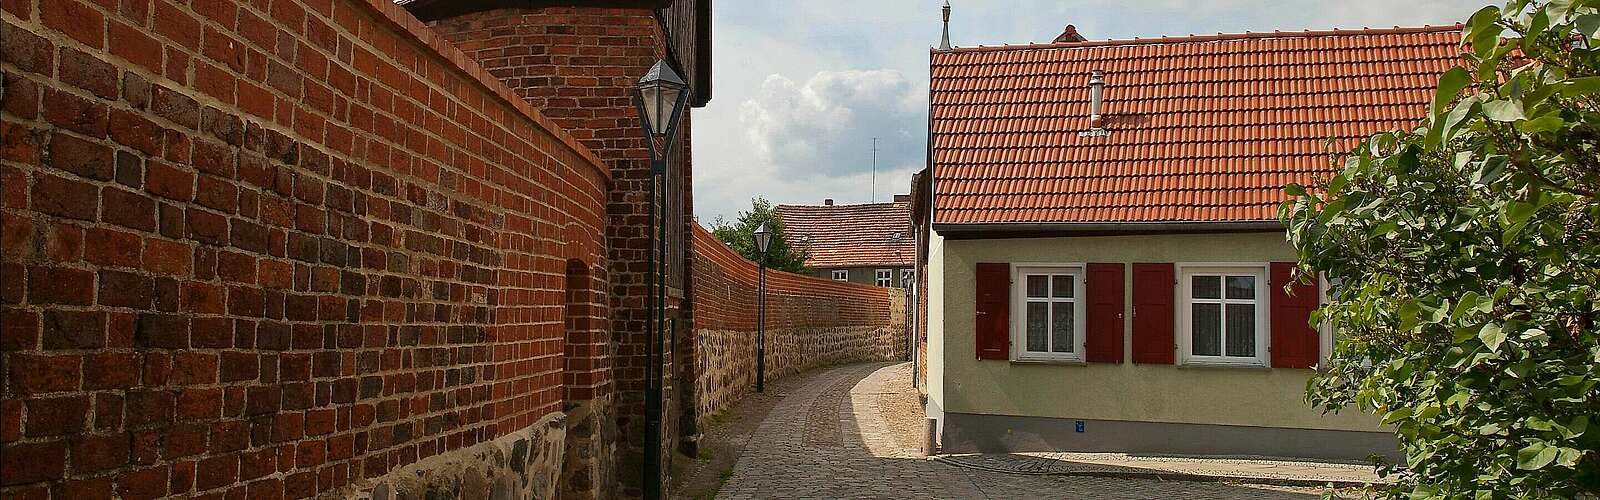 Altstadt von Kyritz,
        
    

        Foto: AG HIS Arbeitsgemeinschaft Städte mit historischen Stadtkernen/Erik-Jan Ouwerkerk